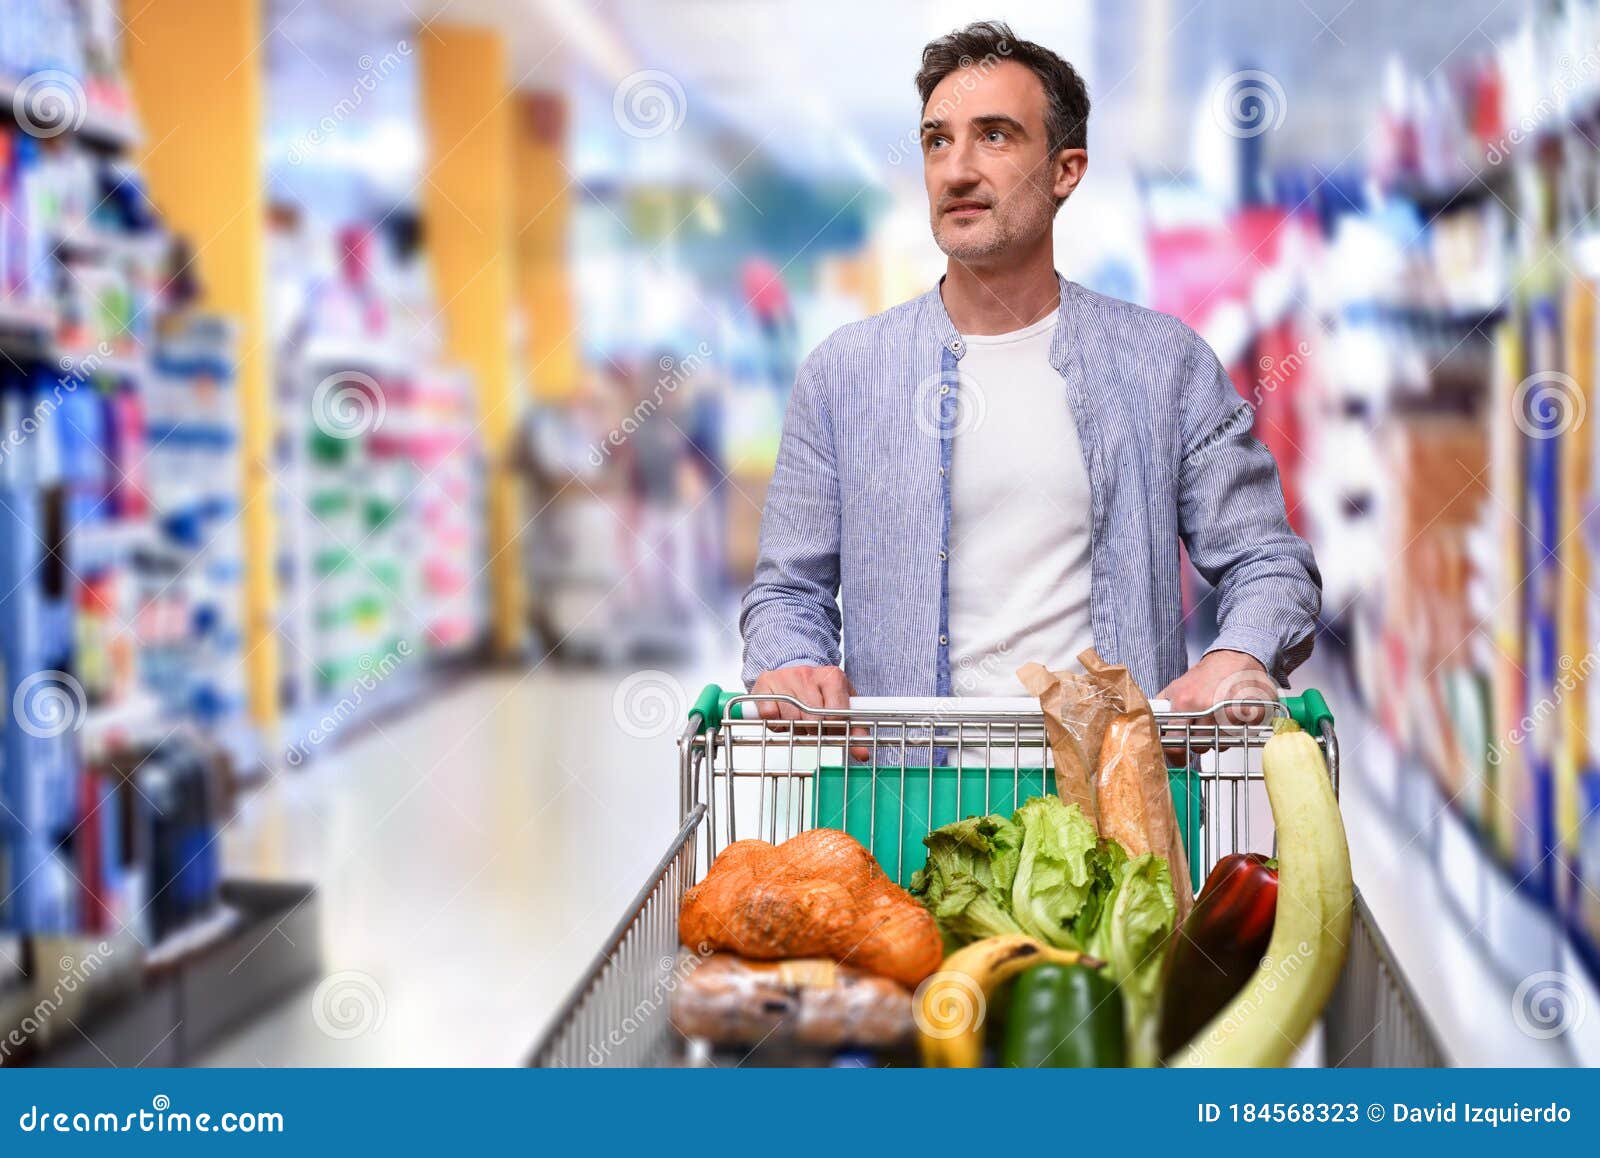 Hombre Comprando Y Empujando Un Carro De La Compra En Un Supermercado  Imagen de archivo - Imagen de consumerismo, compra: 184568323